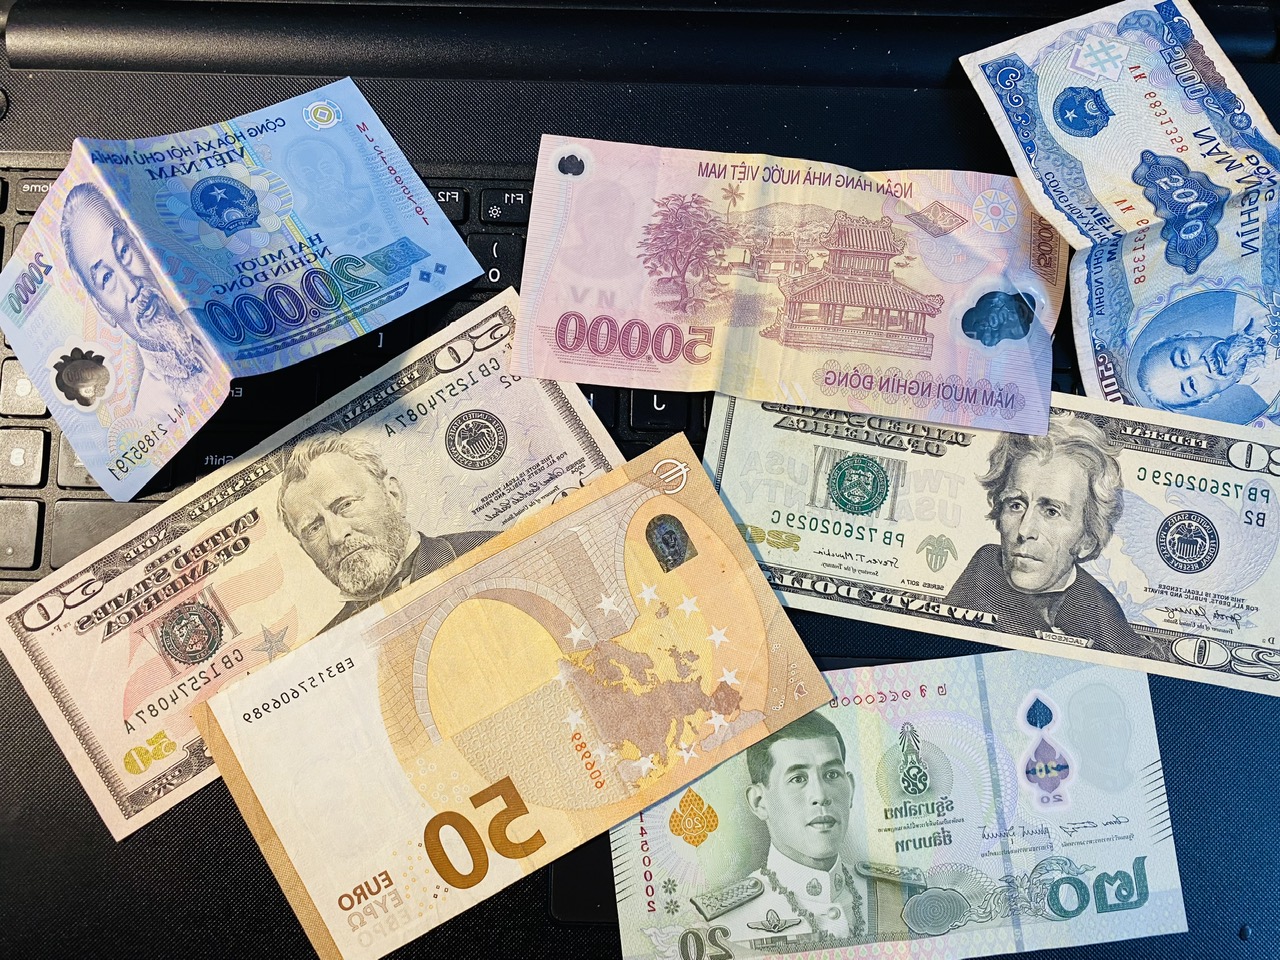 exchange money The Best Places to Exchange Money in Hanoi